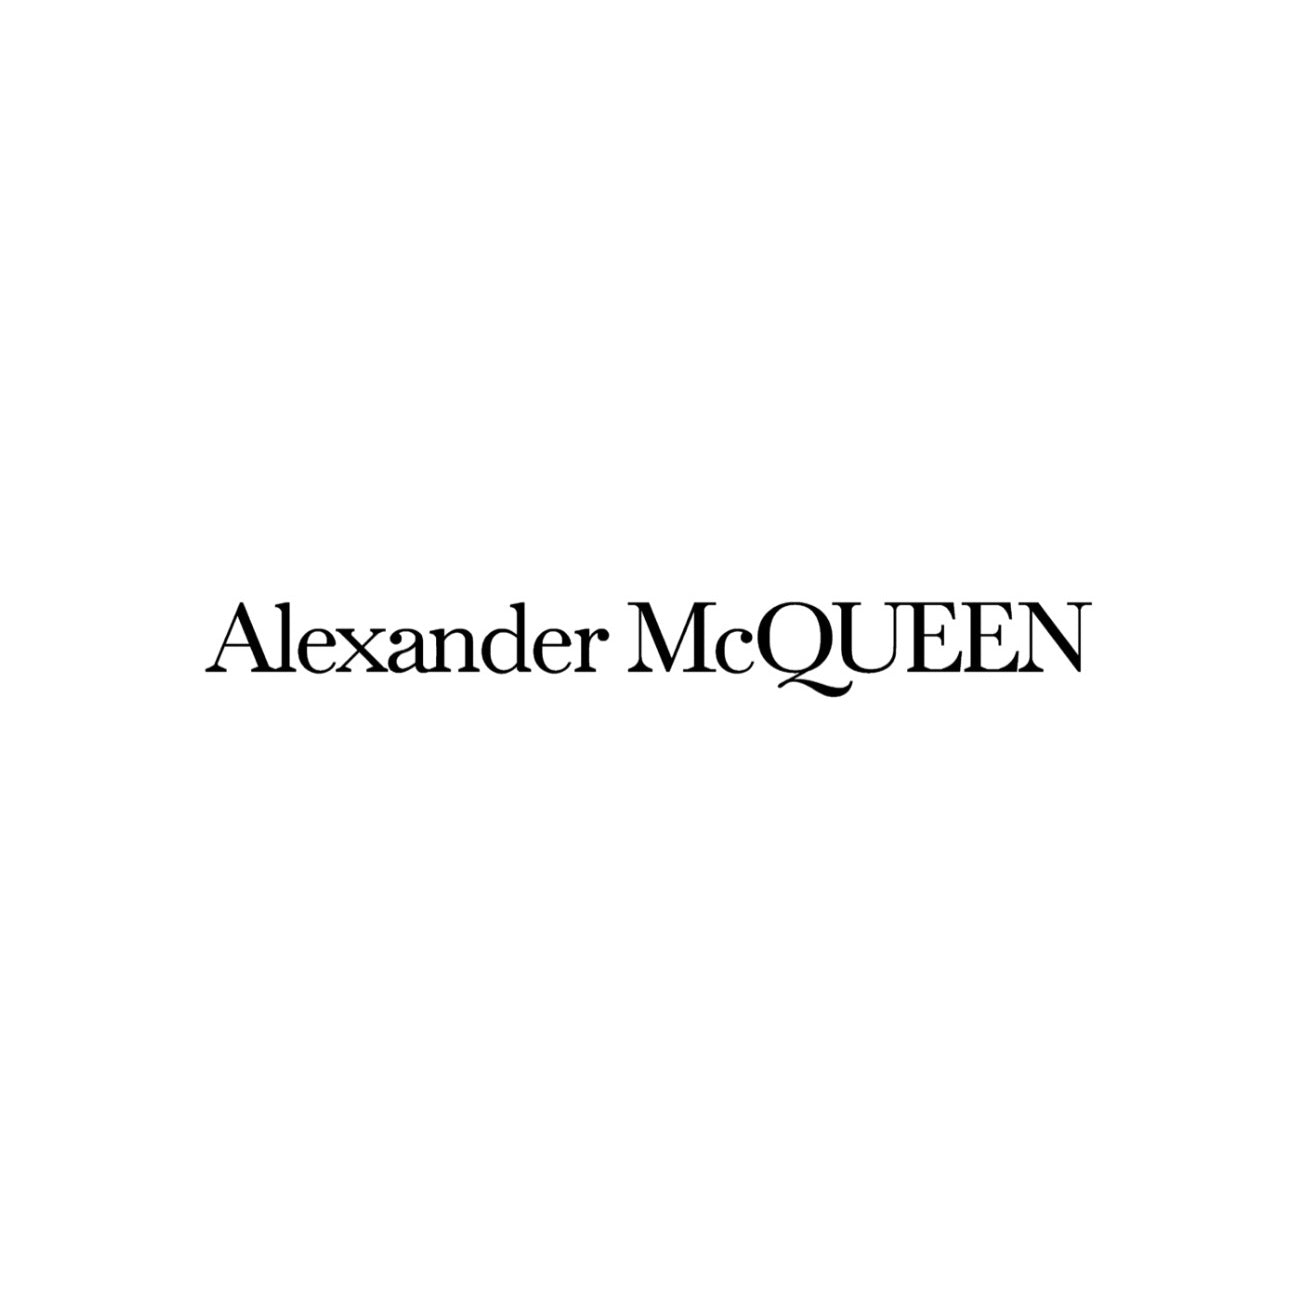 ALEXANDER MCQUEEN